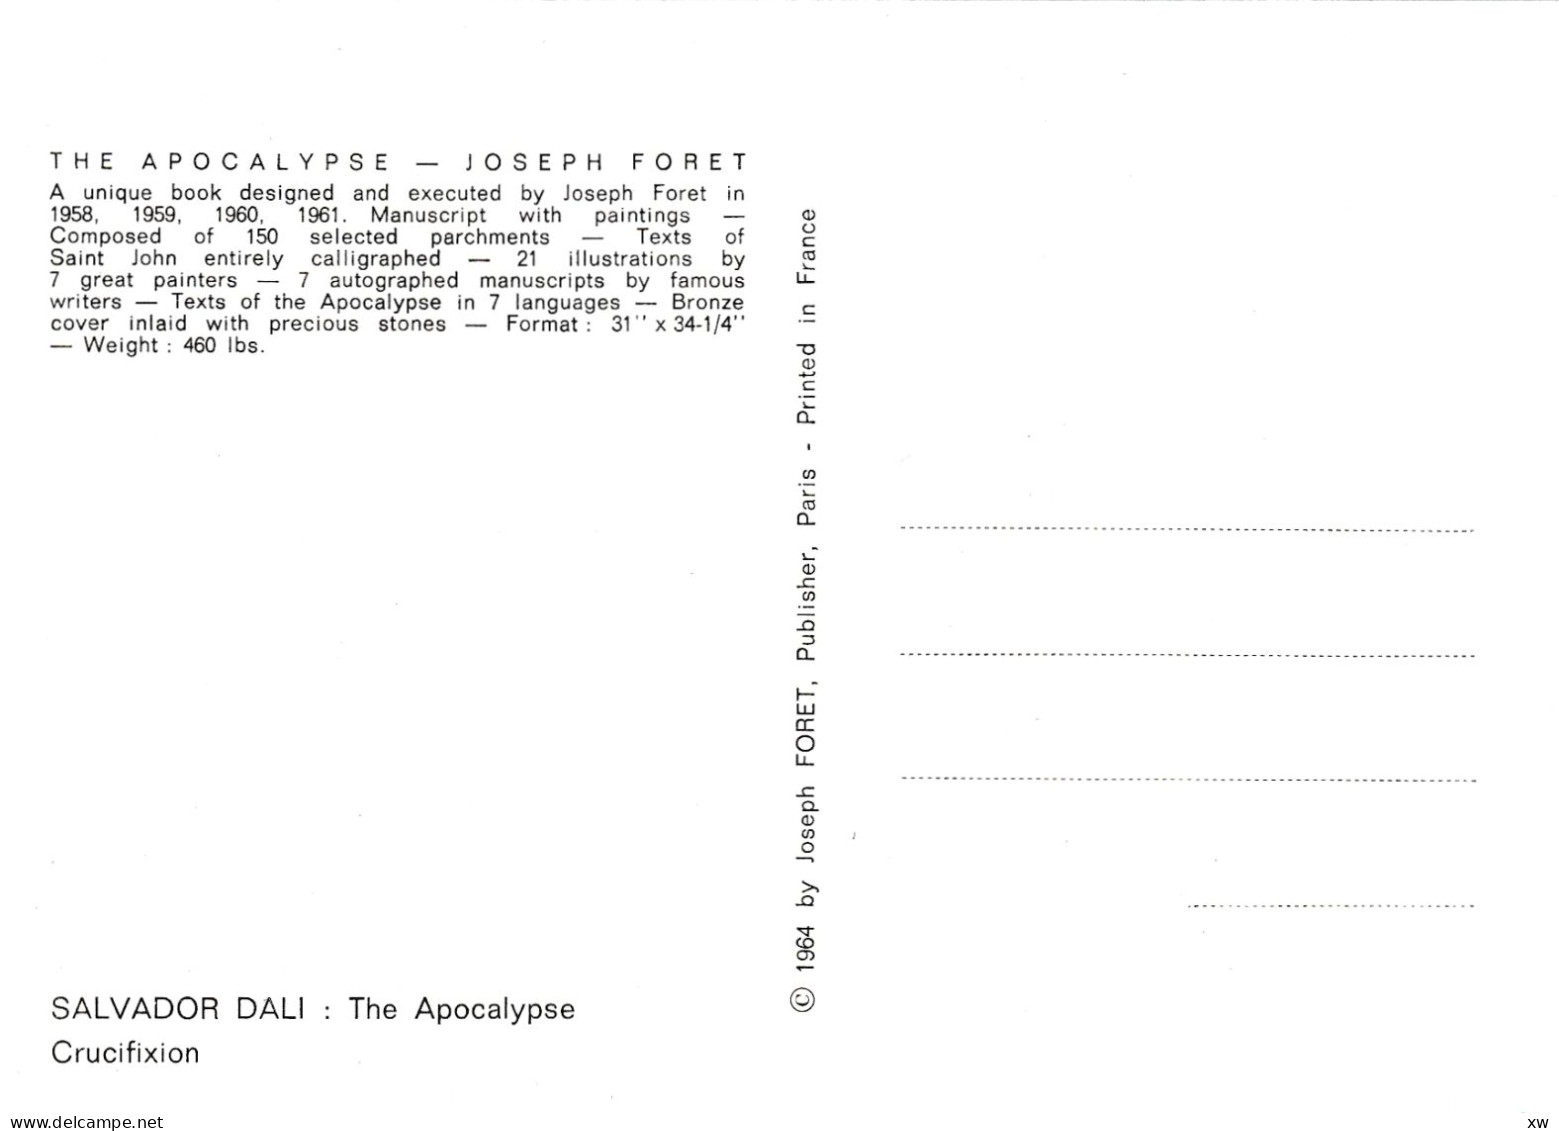 EVENEMENTS - CATASTROPHES - APOCALYPSE de Jodeph FOURET - 4 CPM par S. Dali, J. Cocteau, P-Y Tremois - 20-04-24